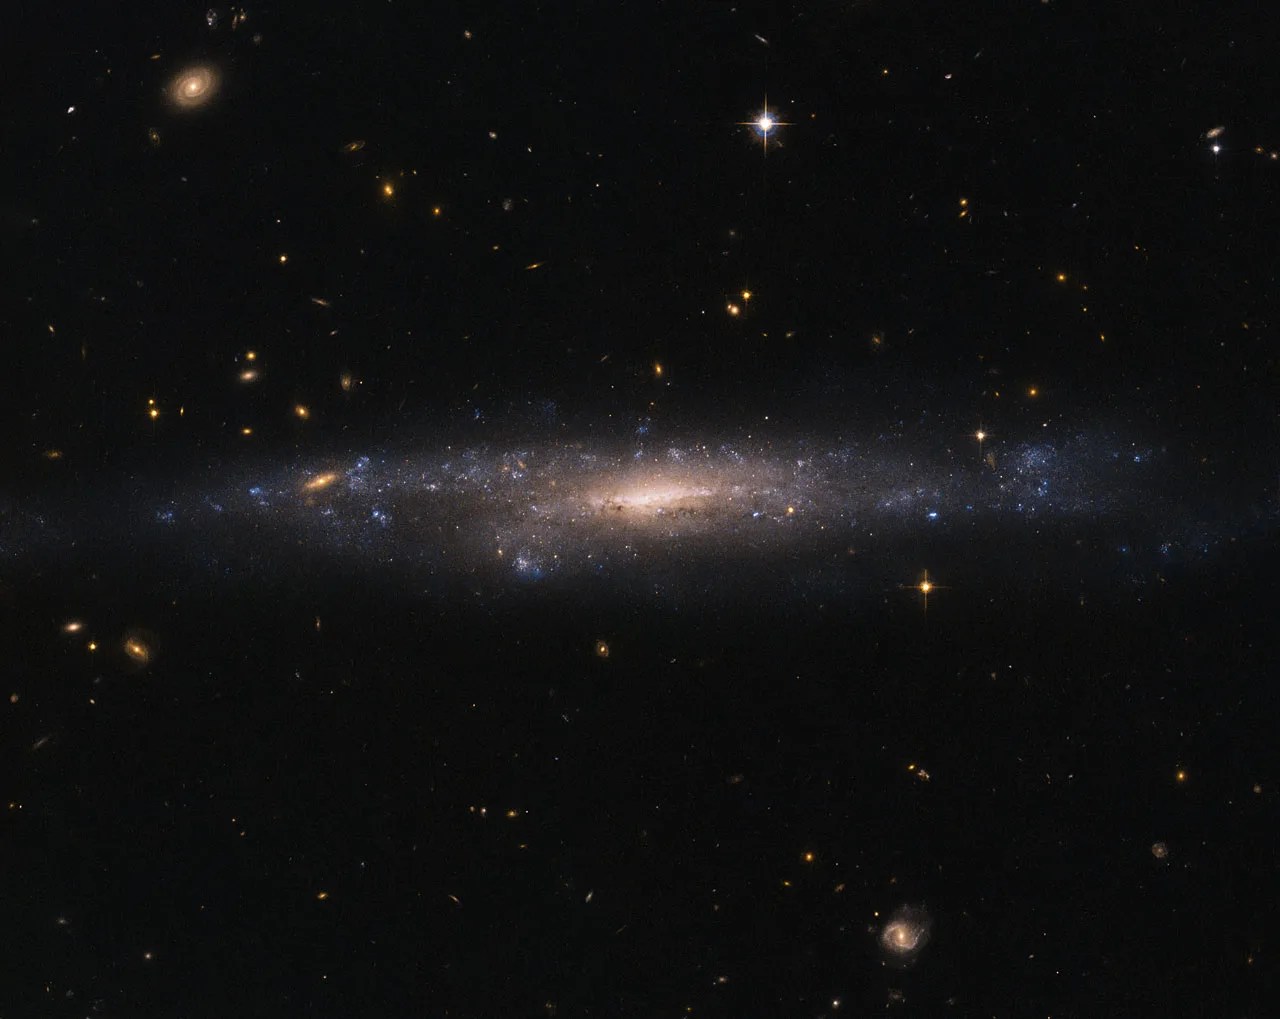 Hubble image of galaxy ugc 477